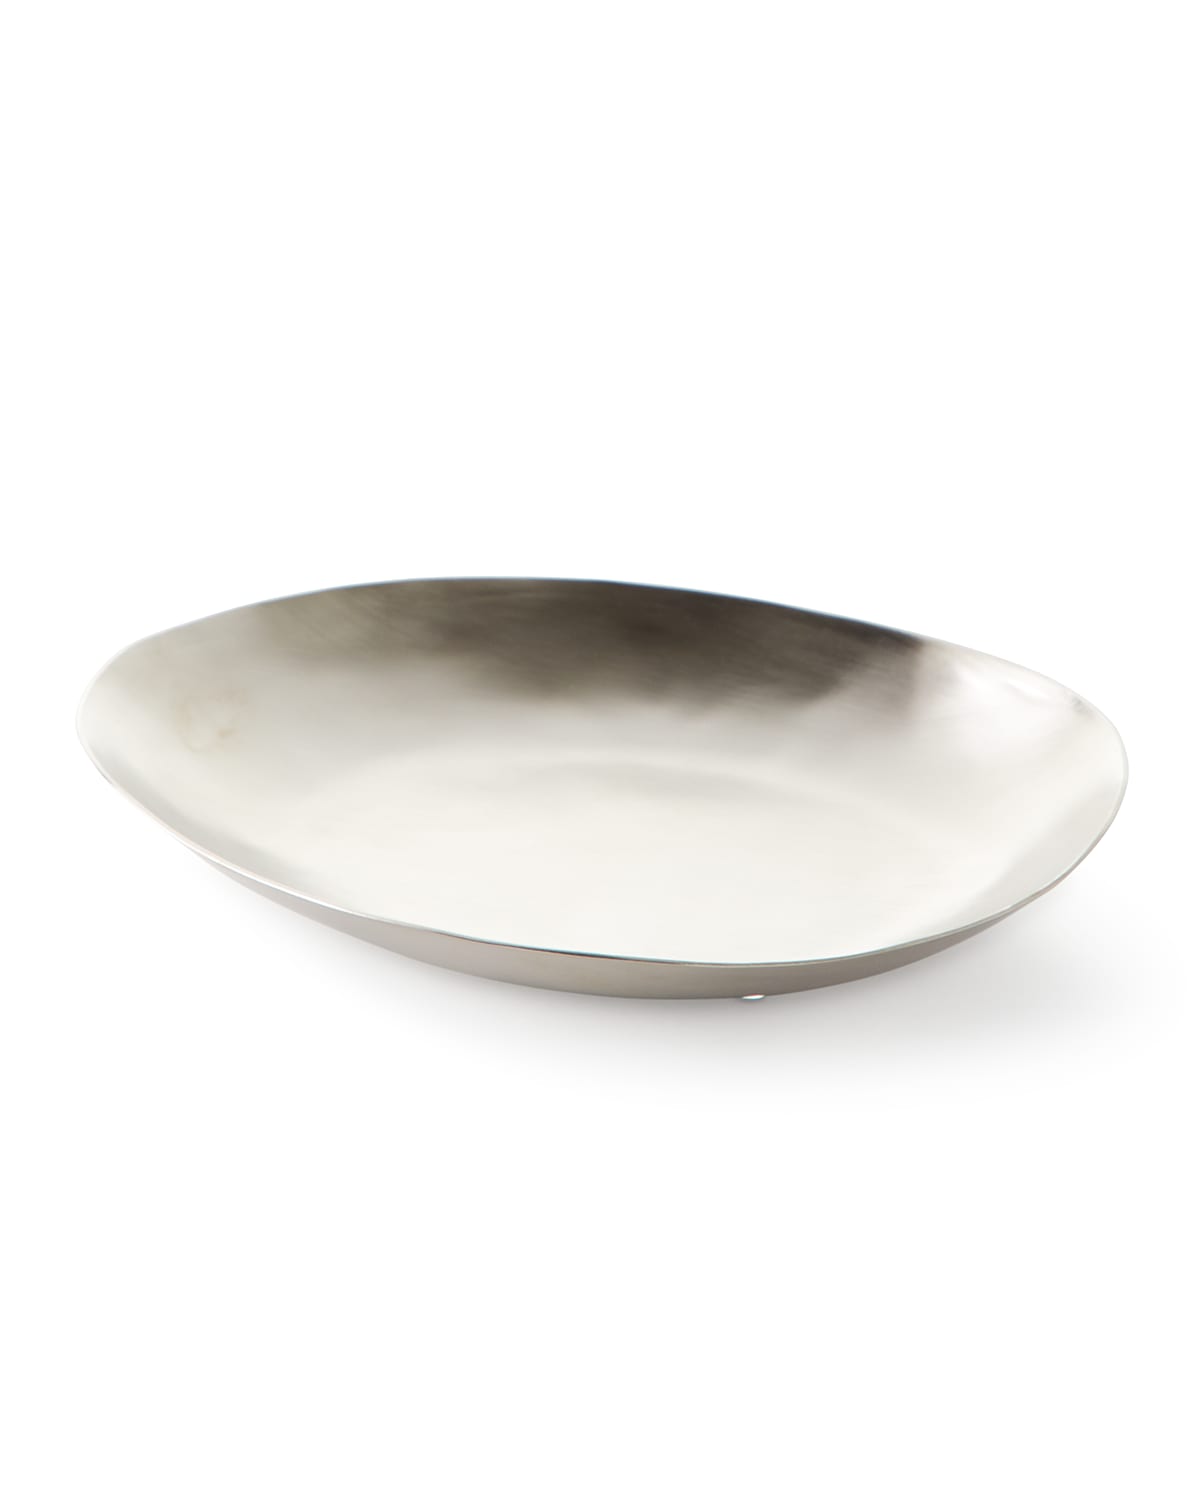 Kassatex Nile Soap Dish In Silver